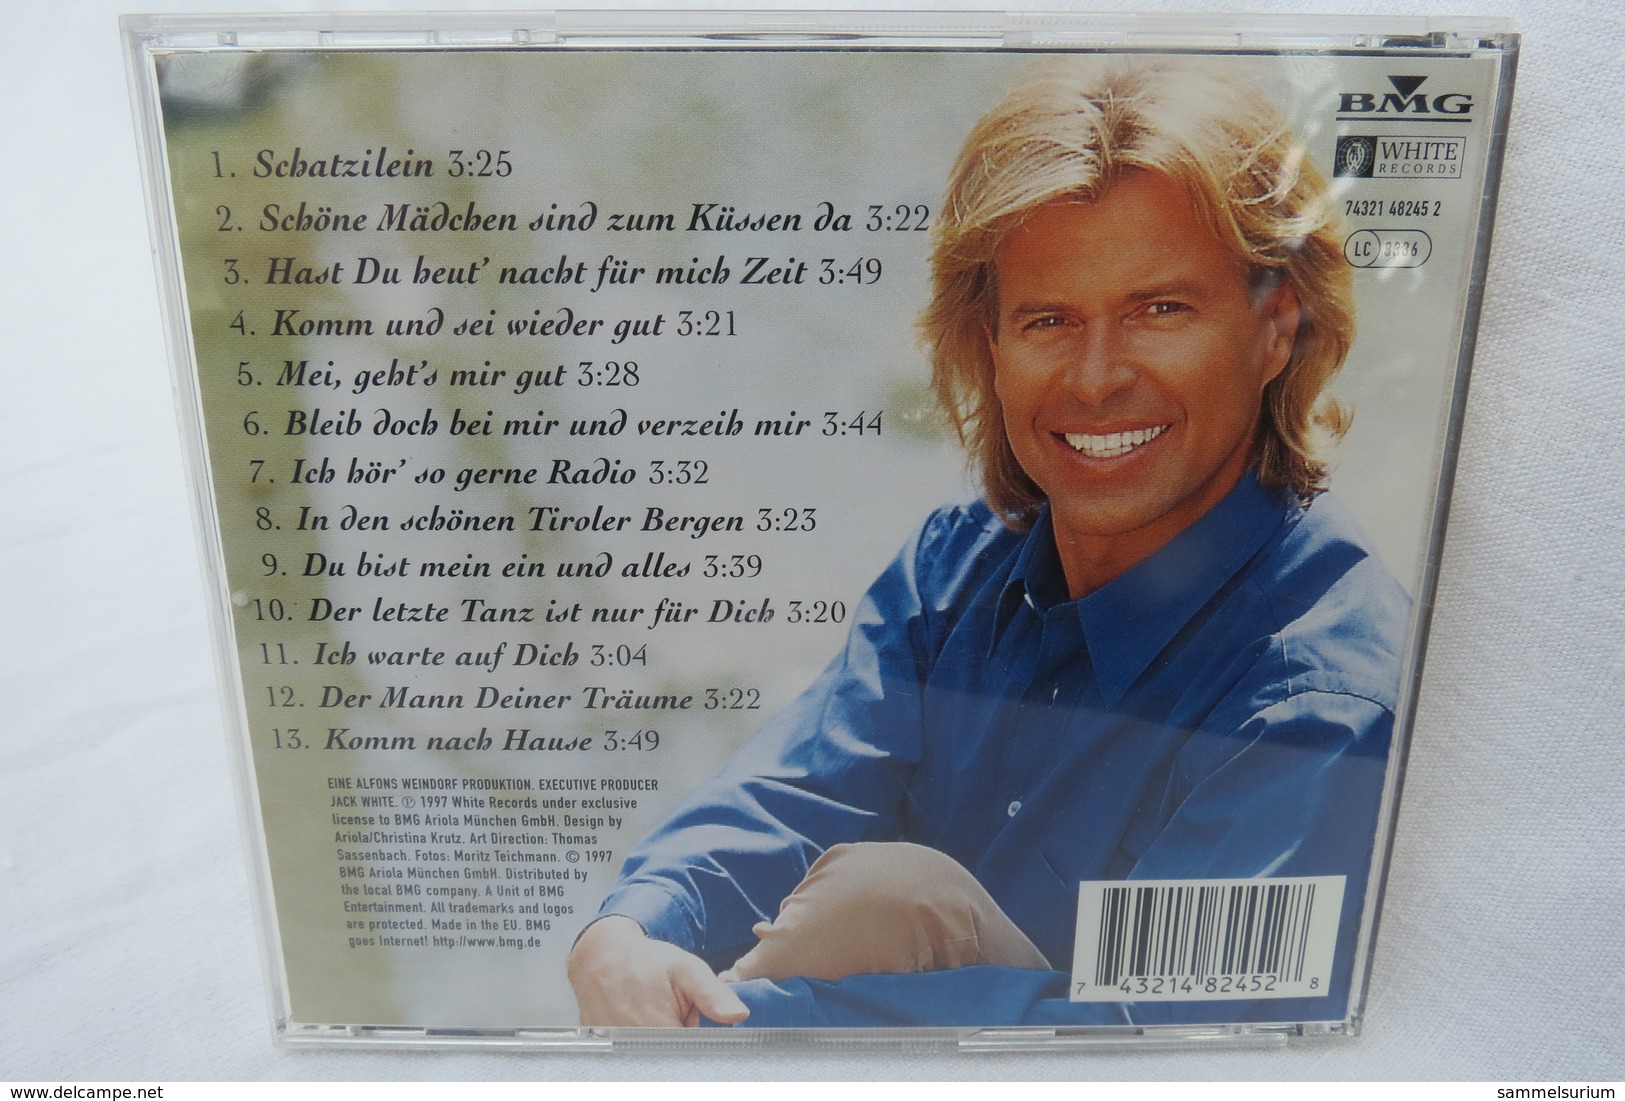 CD "Hansi Hinterseer" Ich Warte Auf Dich - Sonstige - Deutsche Musik